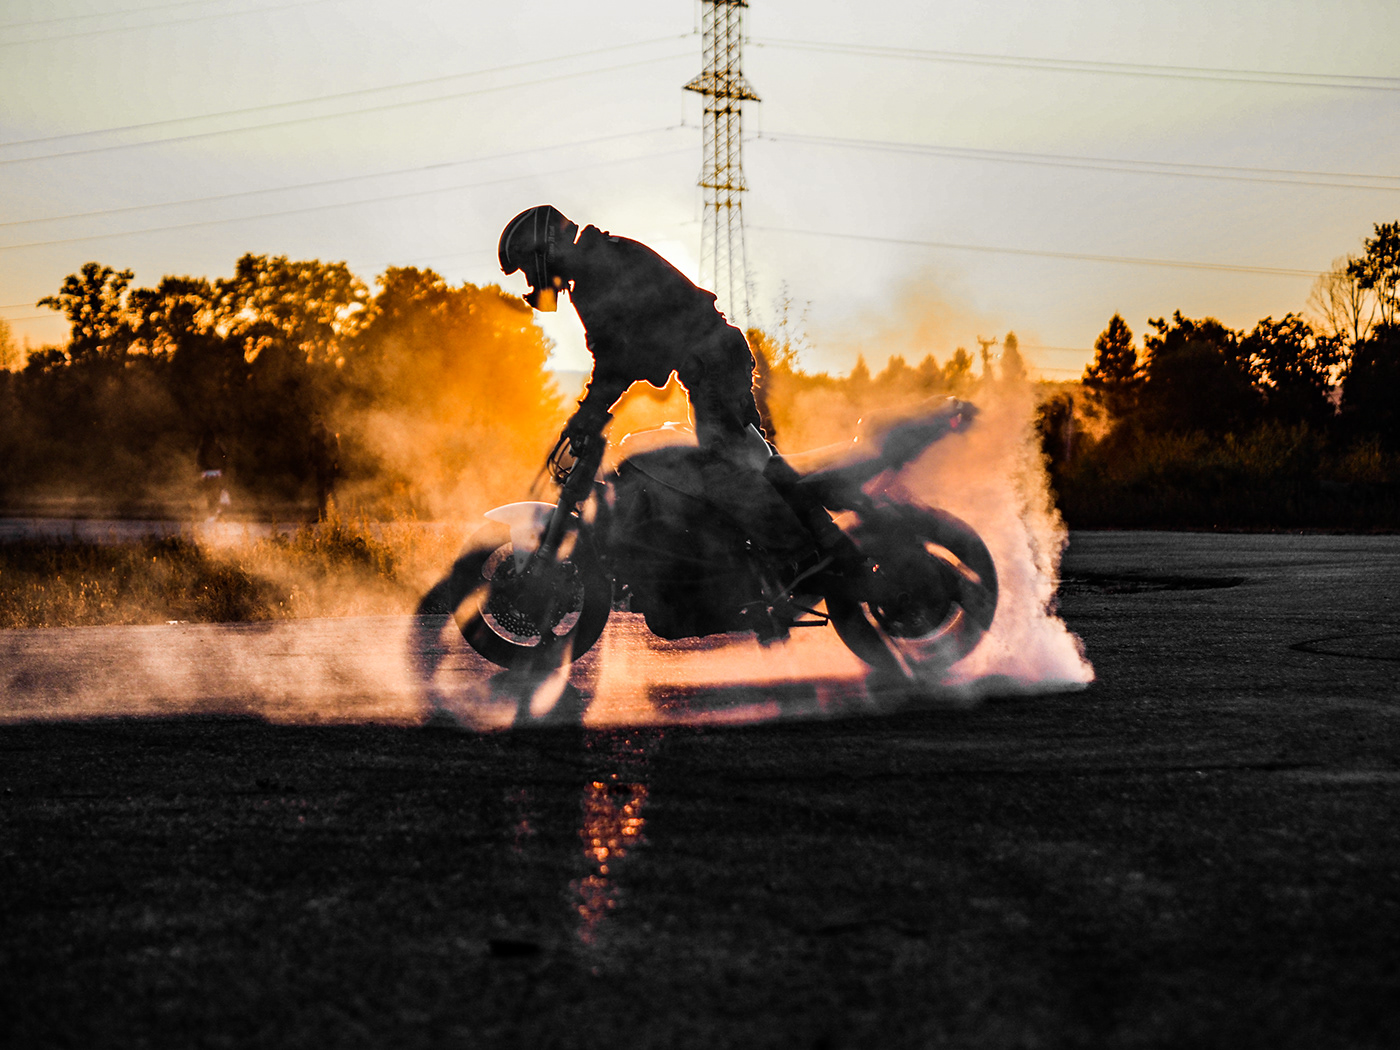 #moto #bike #bikers #stunt #мотоцикл #мотоспорт #honda #yamaha